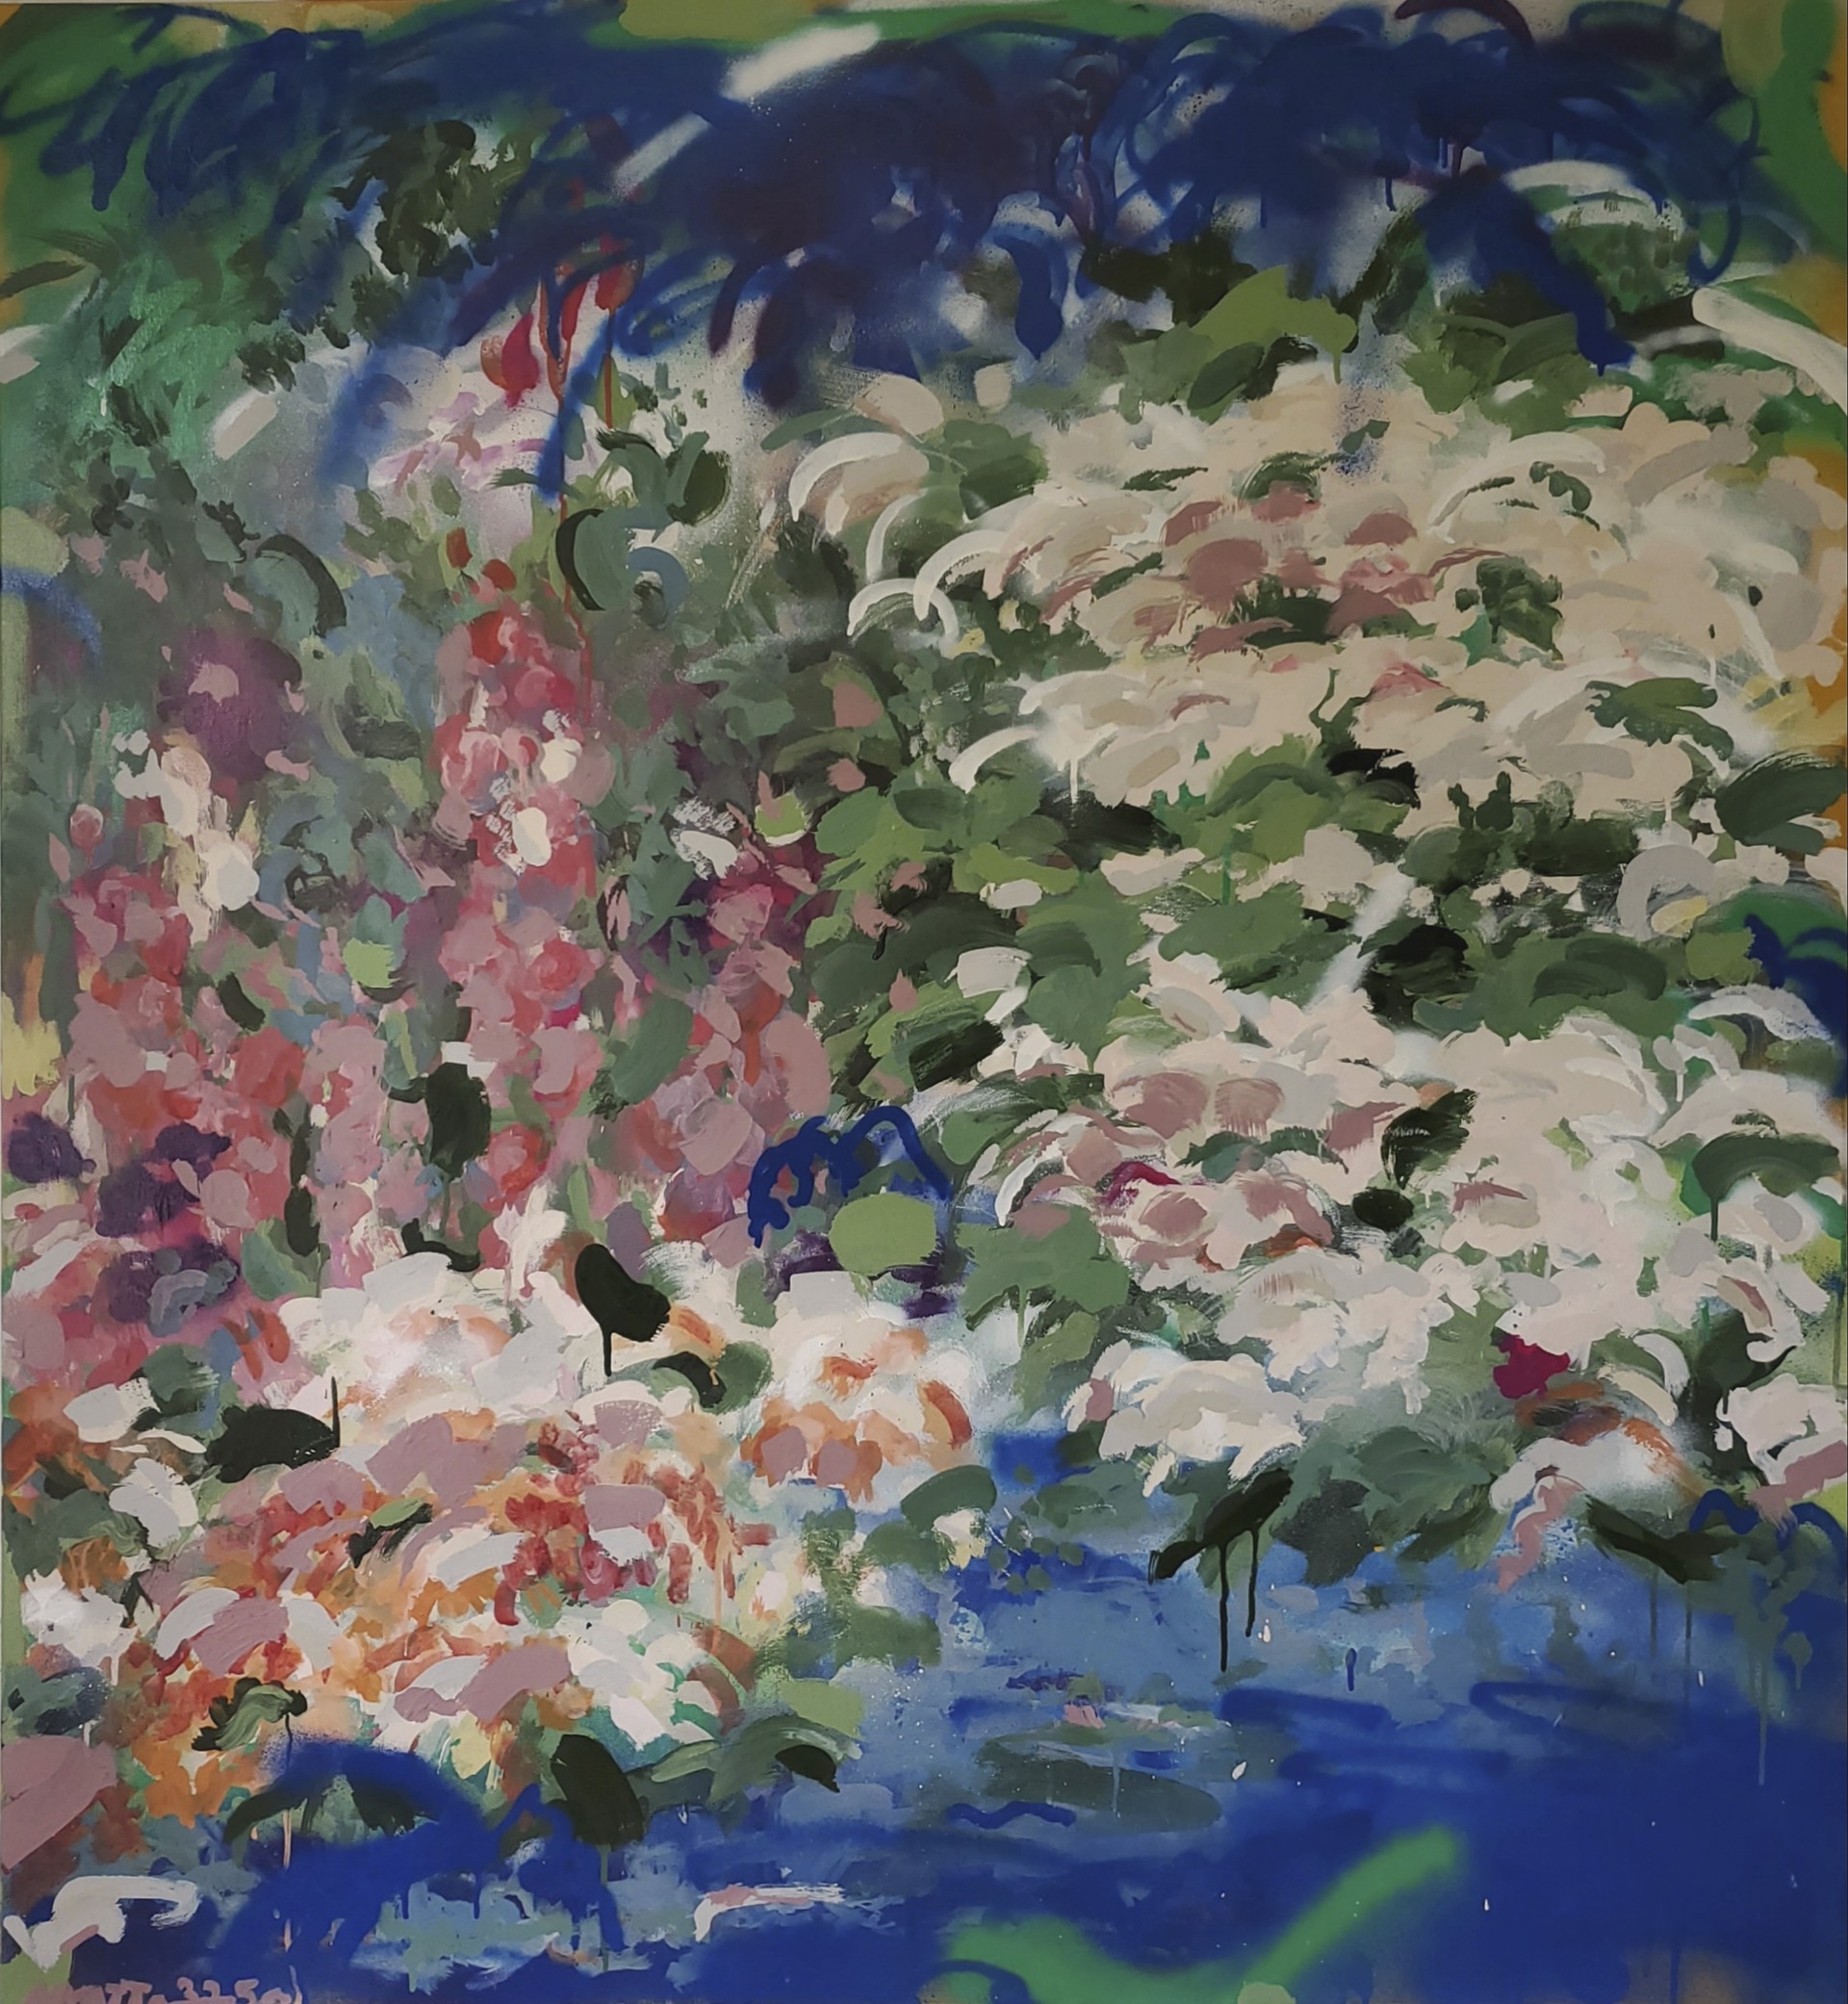 Of Flowering Springs by Cody Erskine